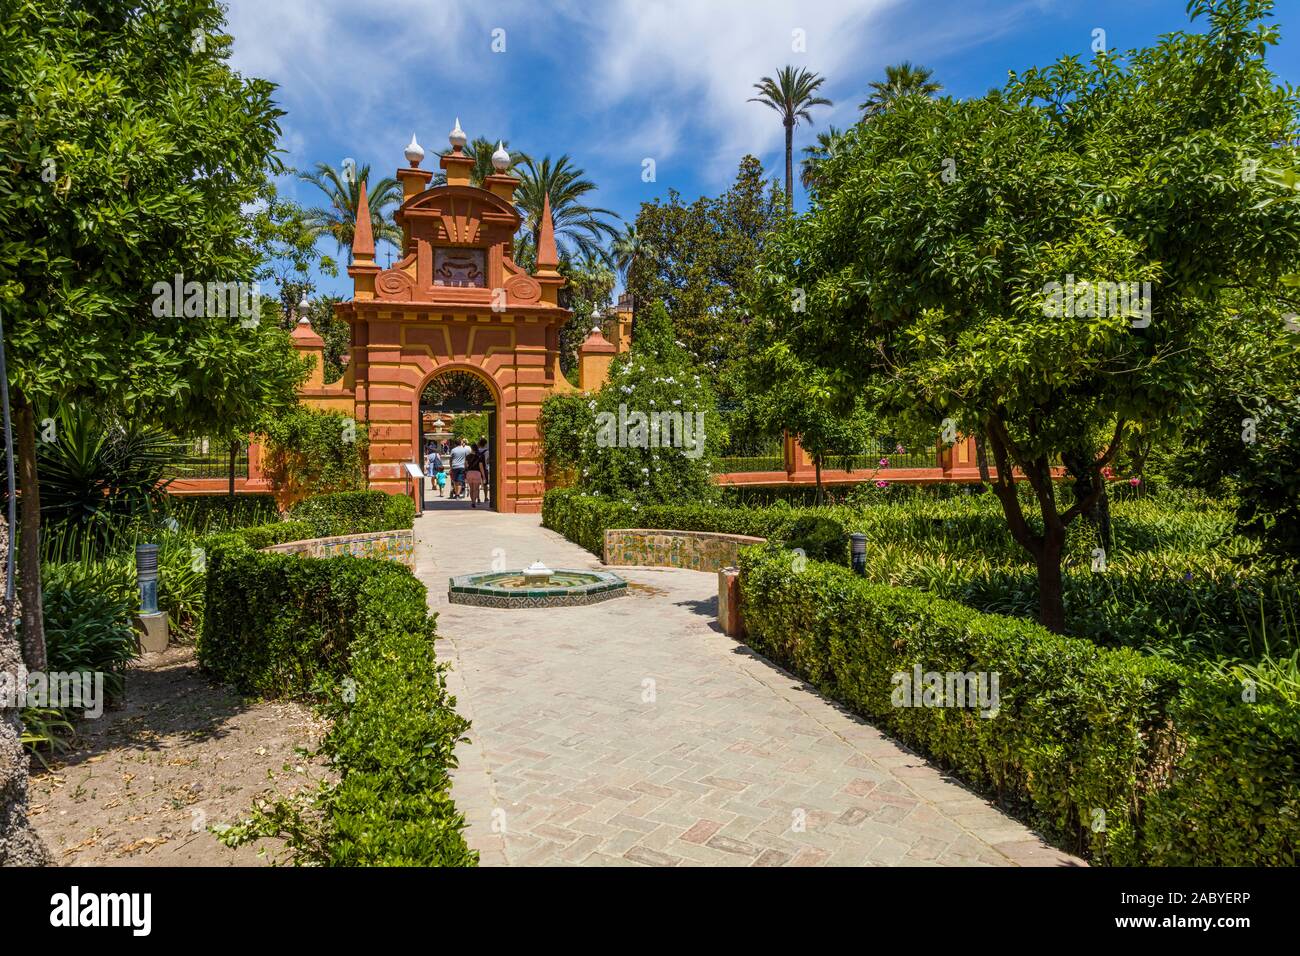 Gärten in Real Alcazar De Sevilla, der königliche Alcázar von Sevilla ist ein königlicher Palast in Sevilla Andalusien Spanien Stockfoto